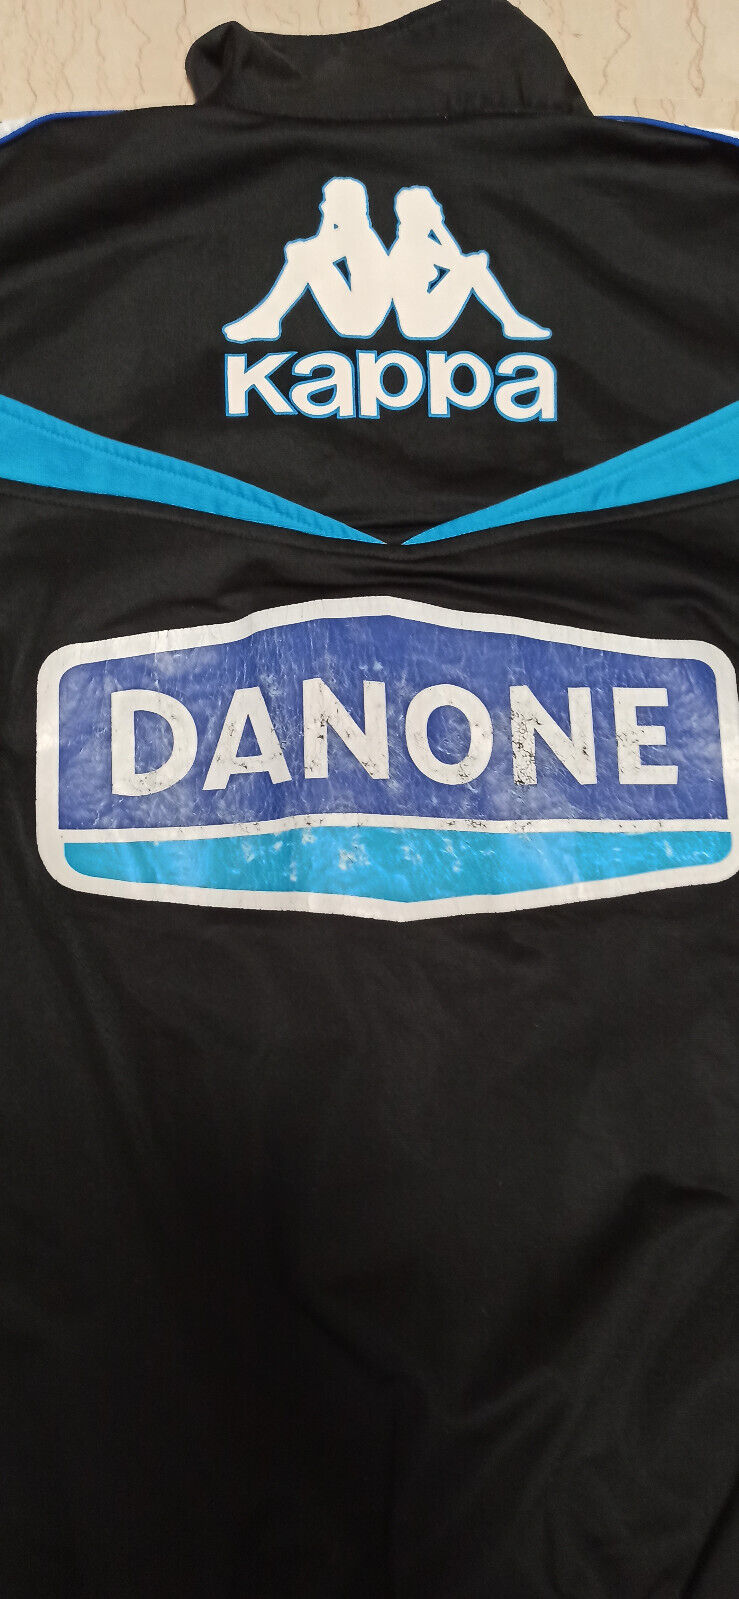 maglia calcio Baggio Juventus Vintage giacca jacket Danone tracktop track Kappa